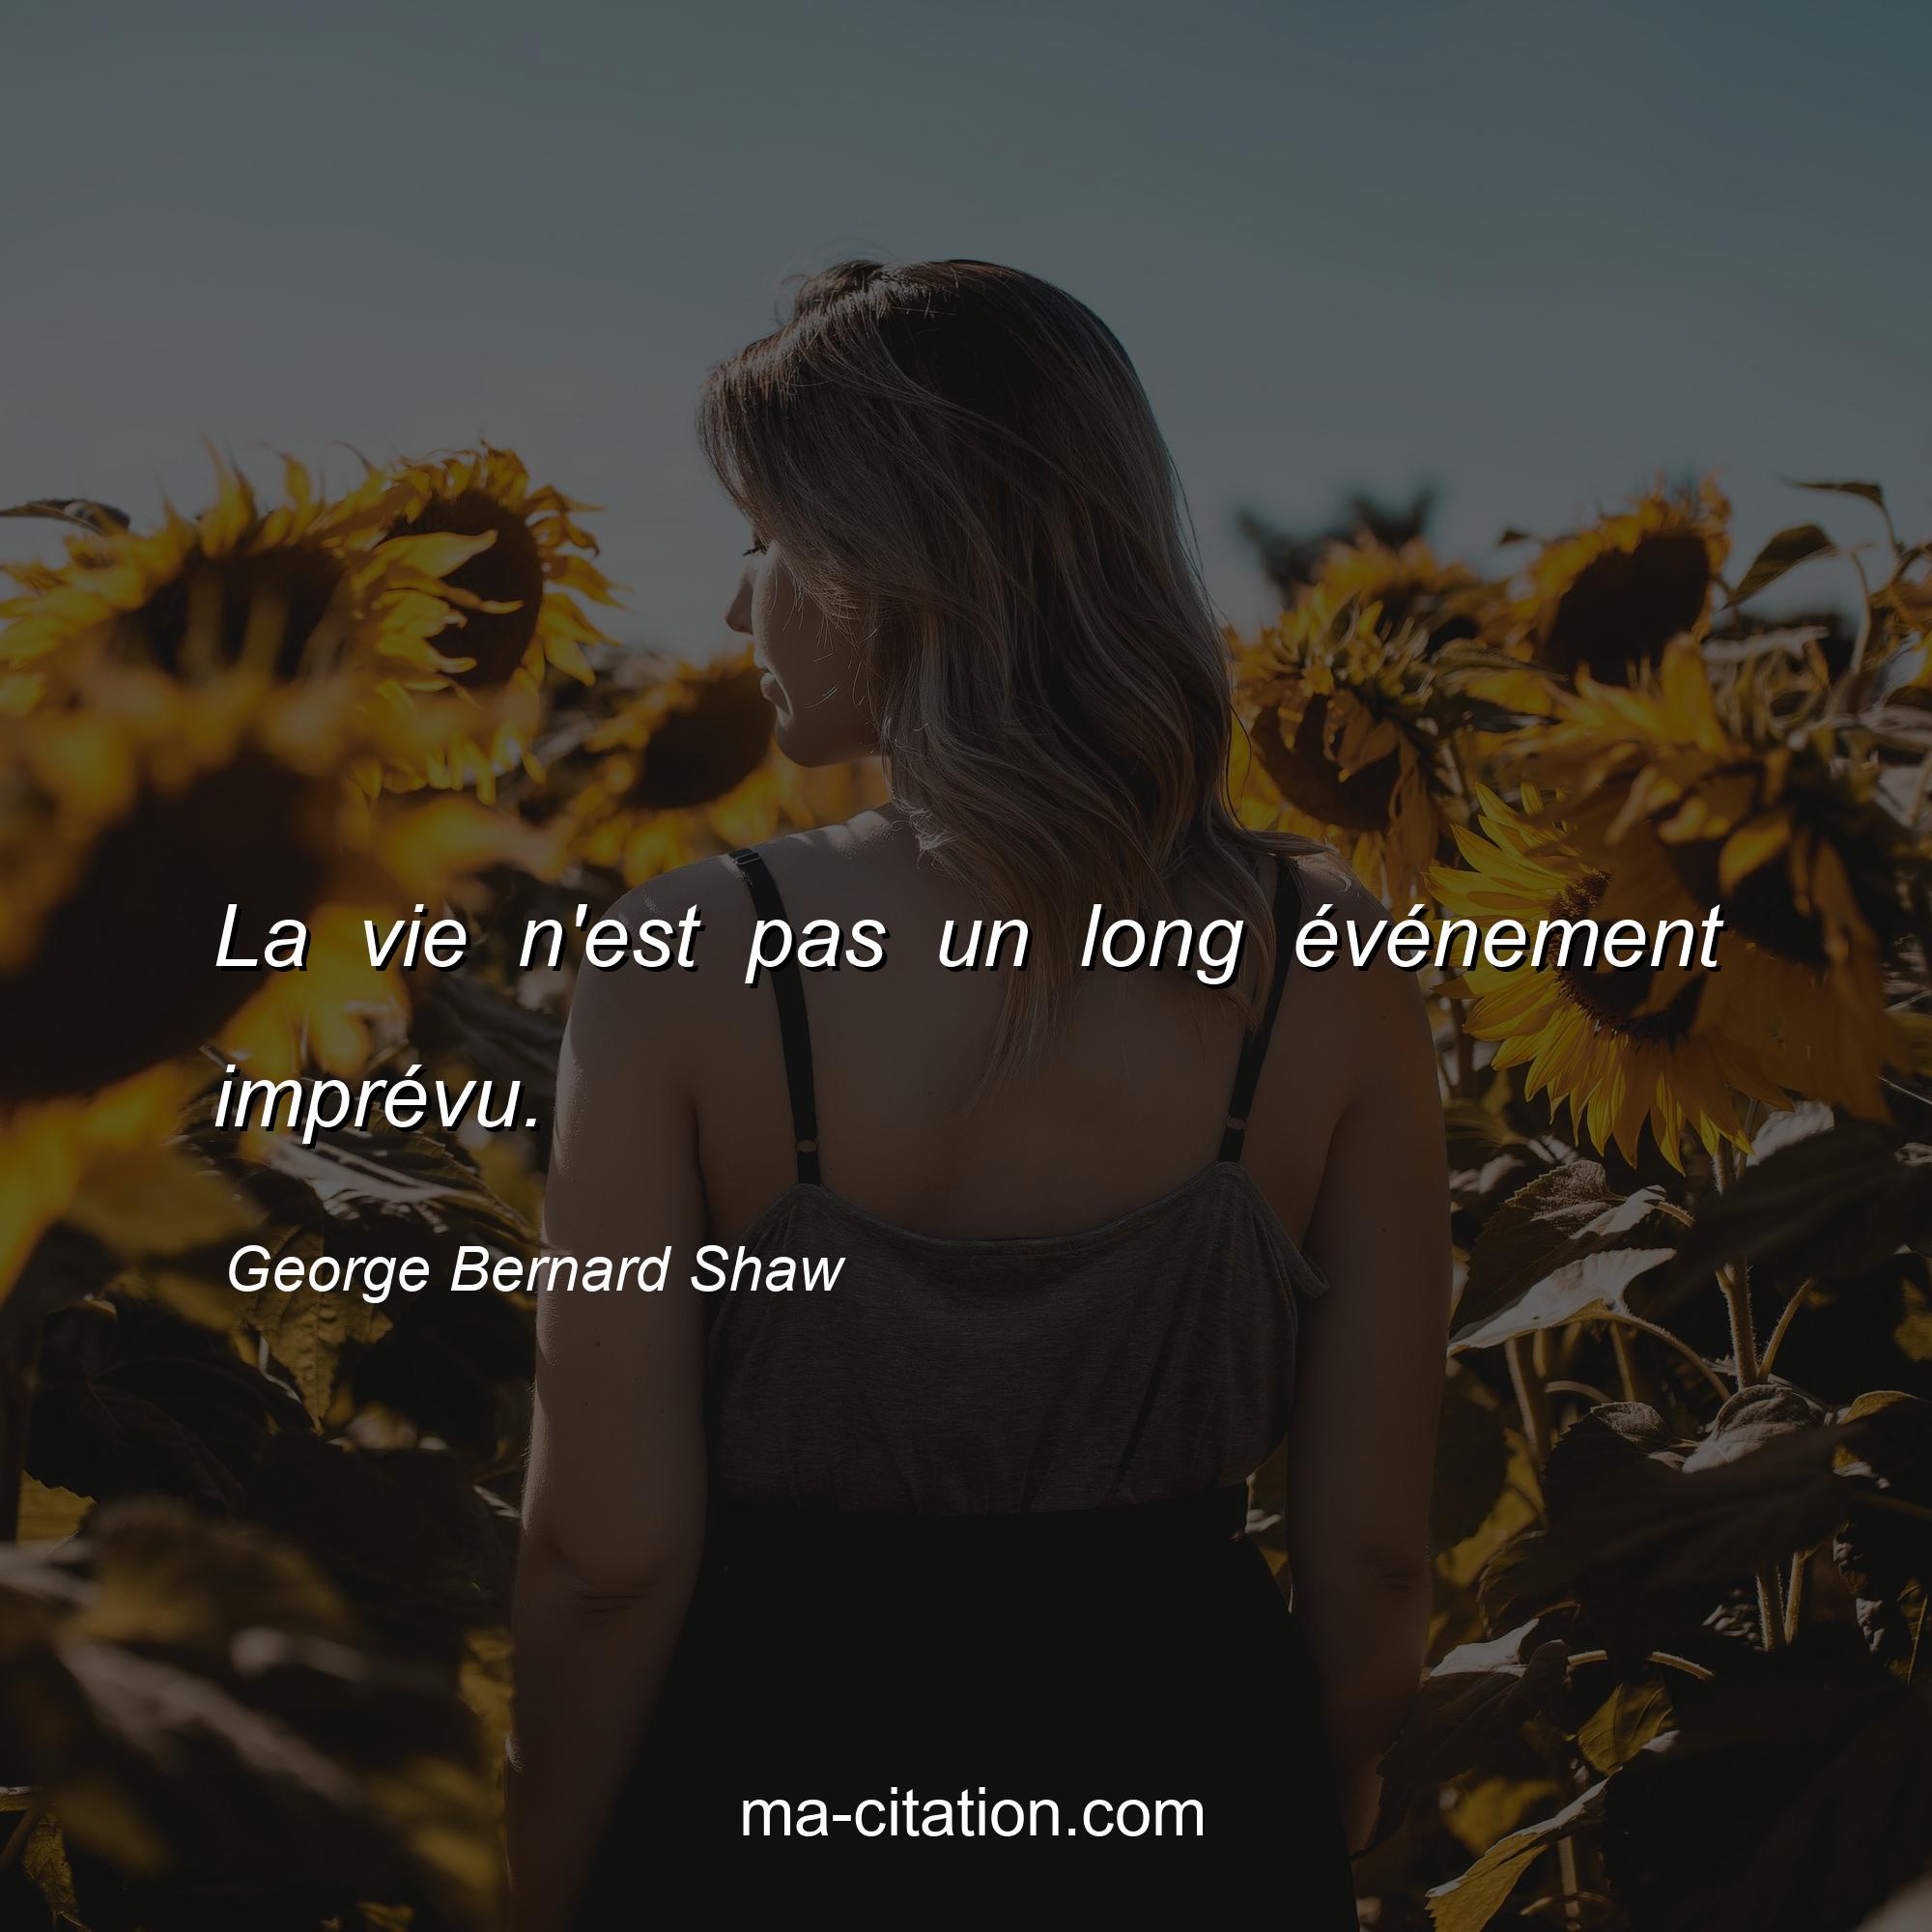 George Bernard Shaw : La vie n'est pas un long événement imprévu.